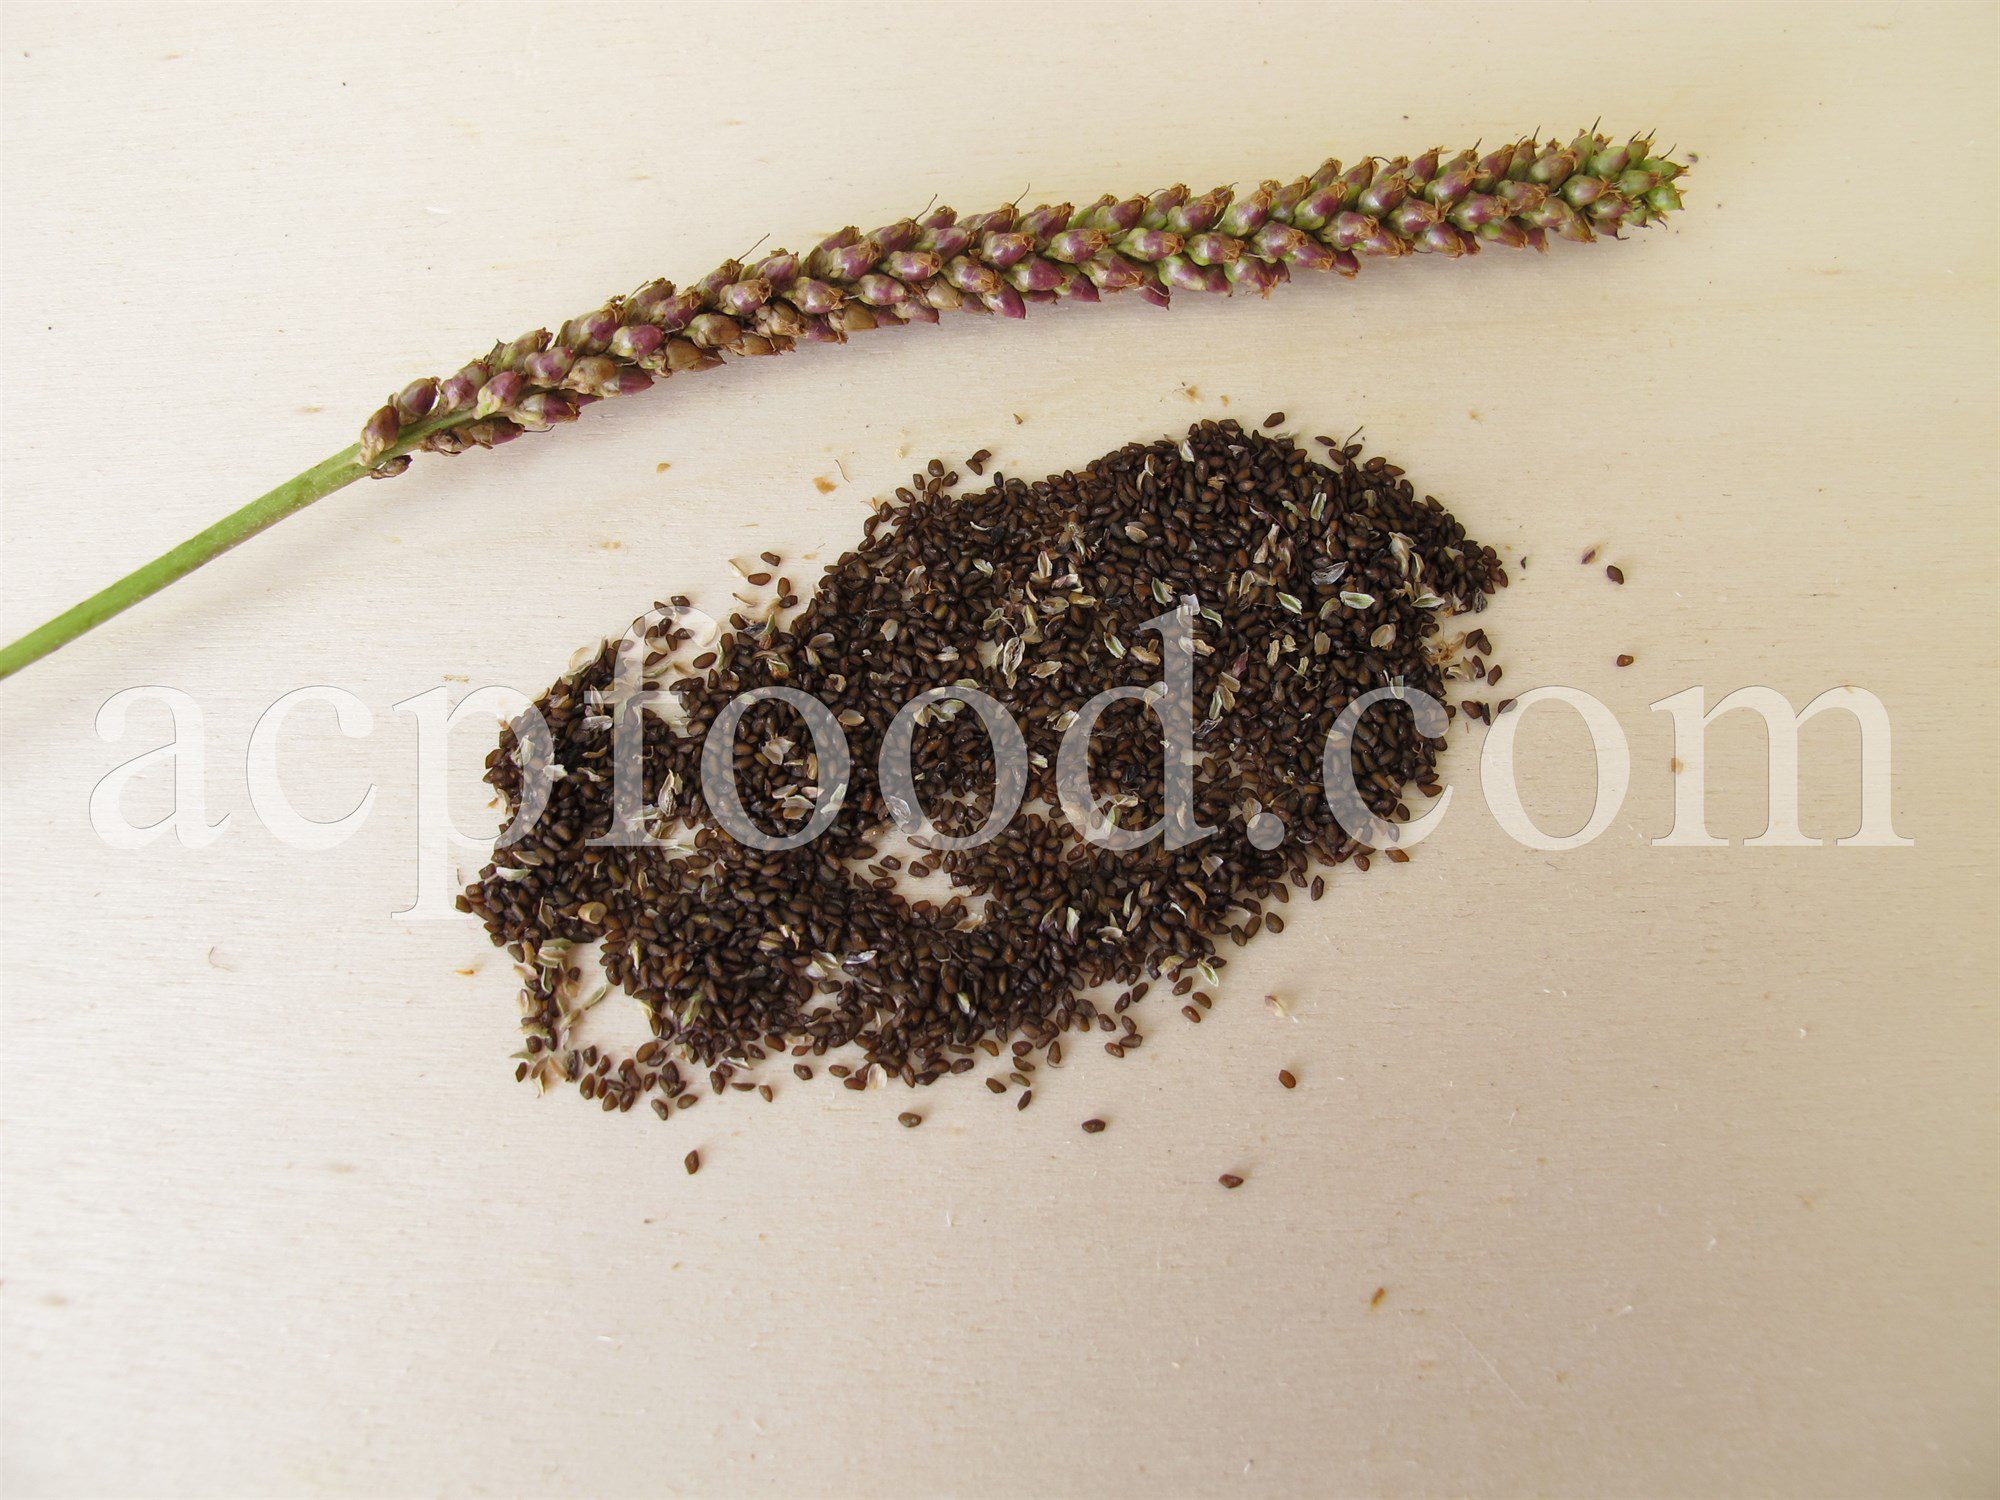 Image of Broadleaf plantain seeds